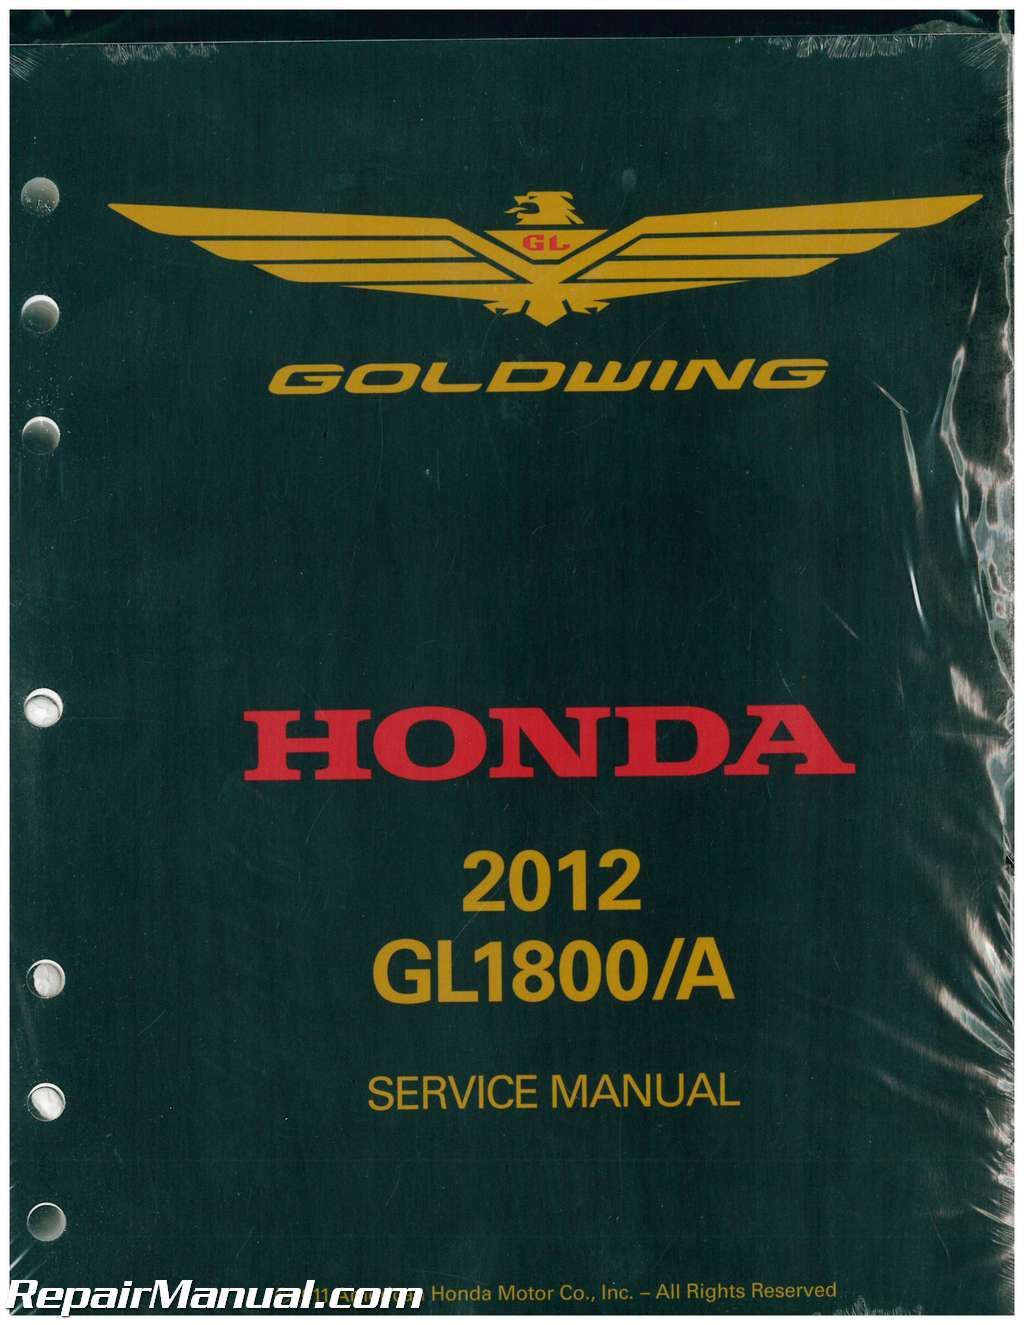 Honda gl1800 service manual download repair manuals